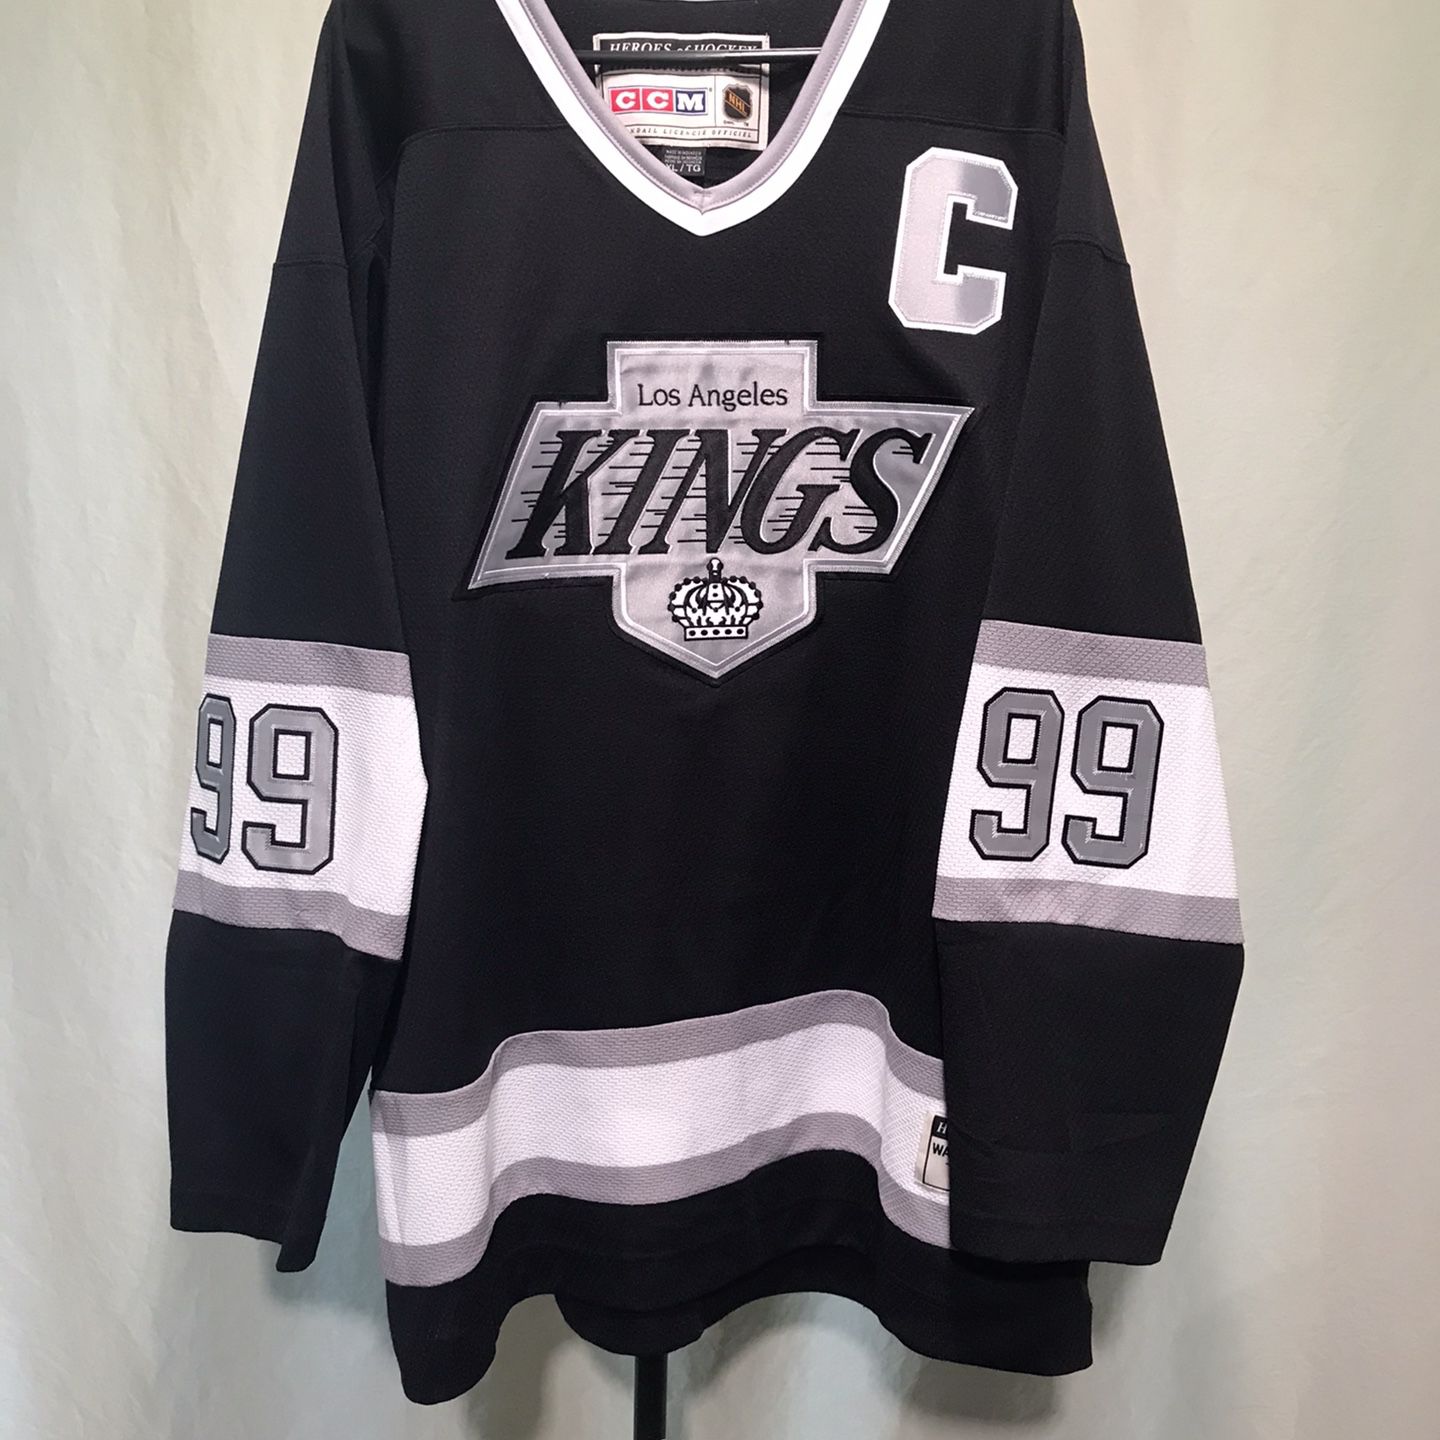 Wayne Gretzky Los Angeles Kings CCM Heroes of Hockey NHL Hockey